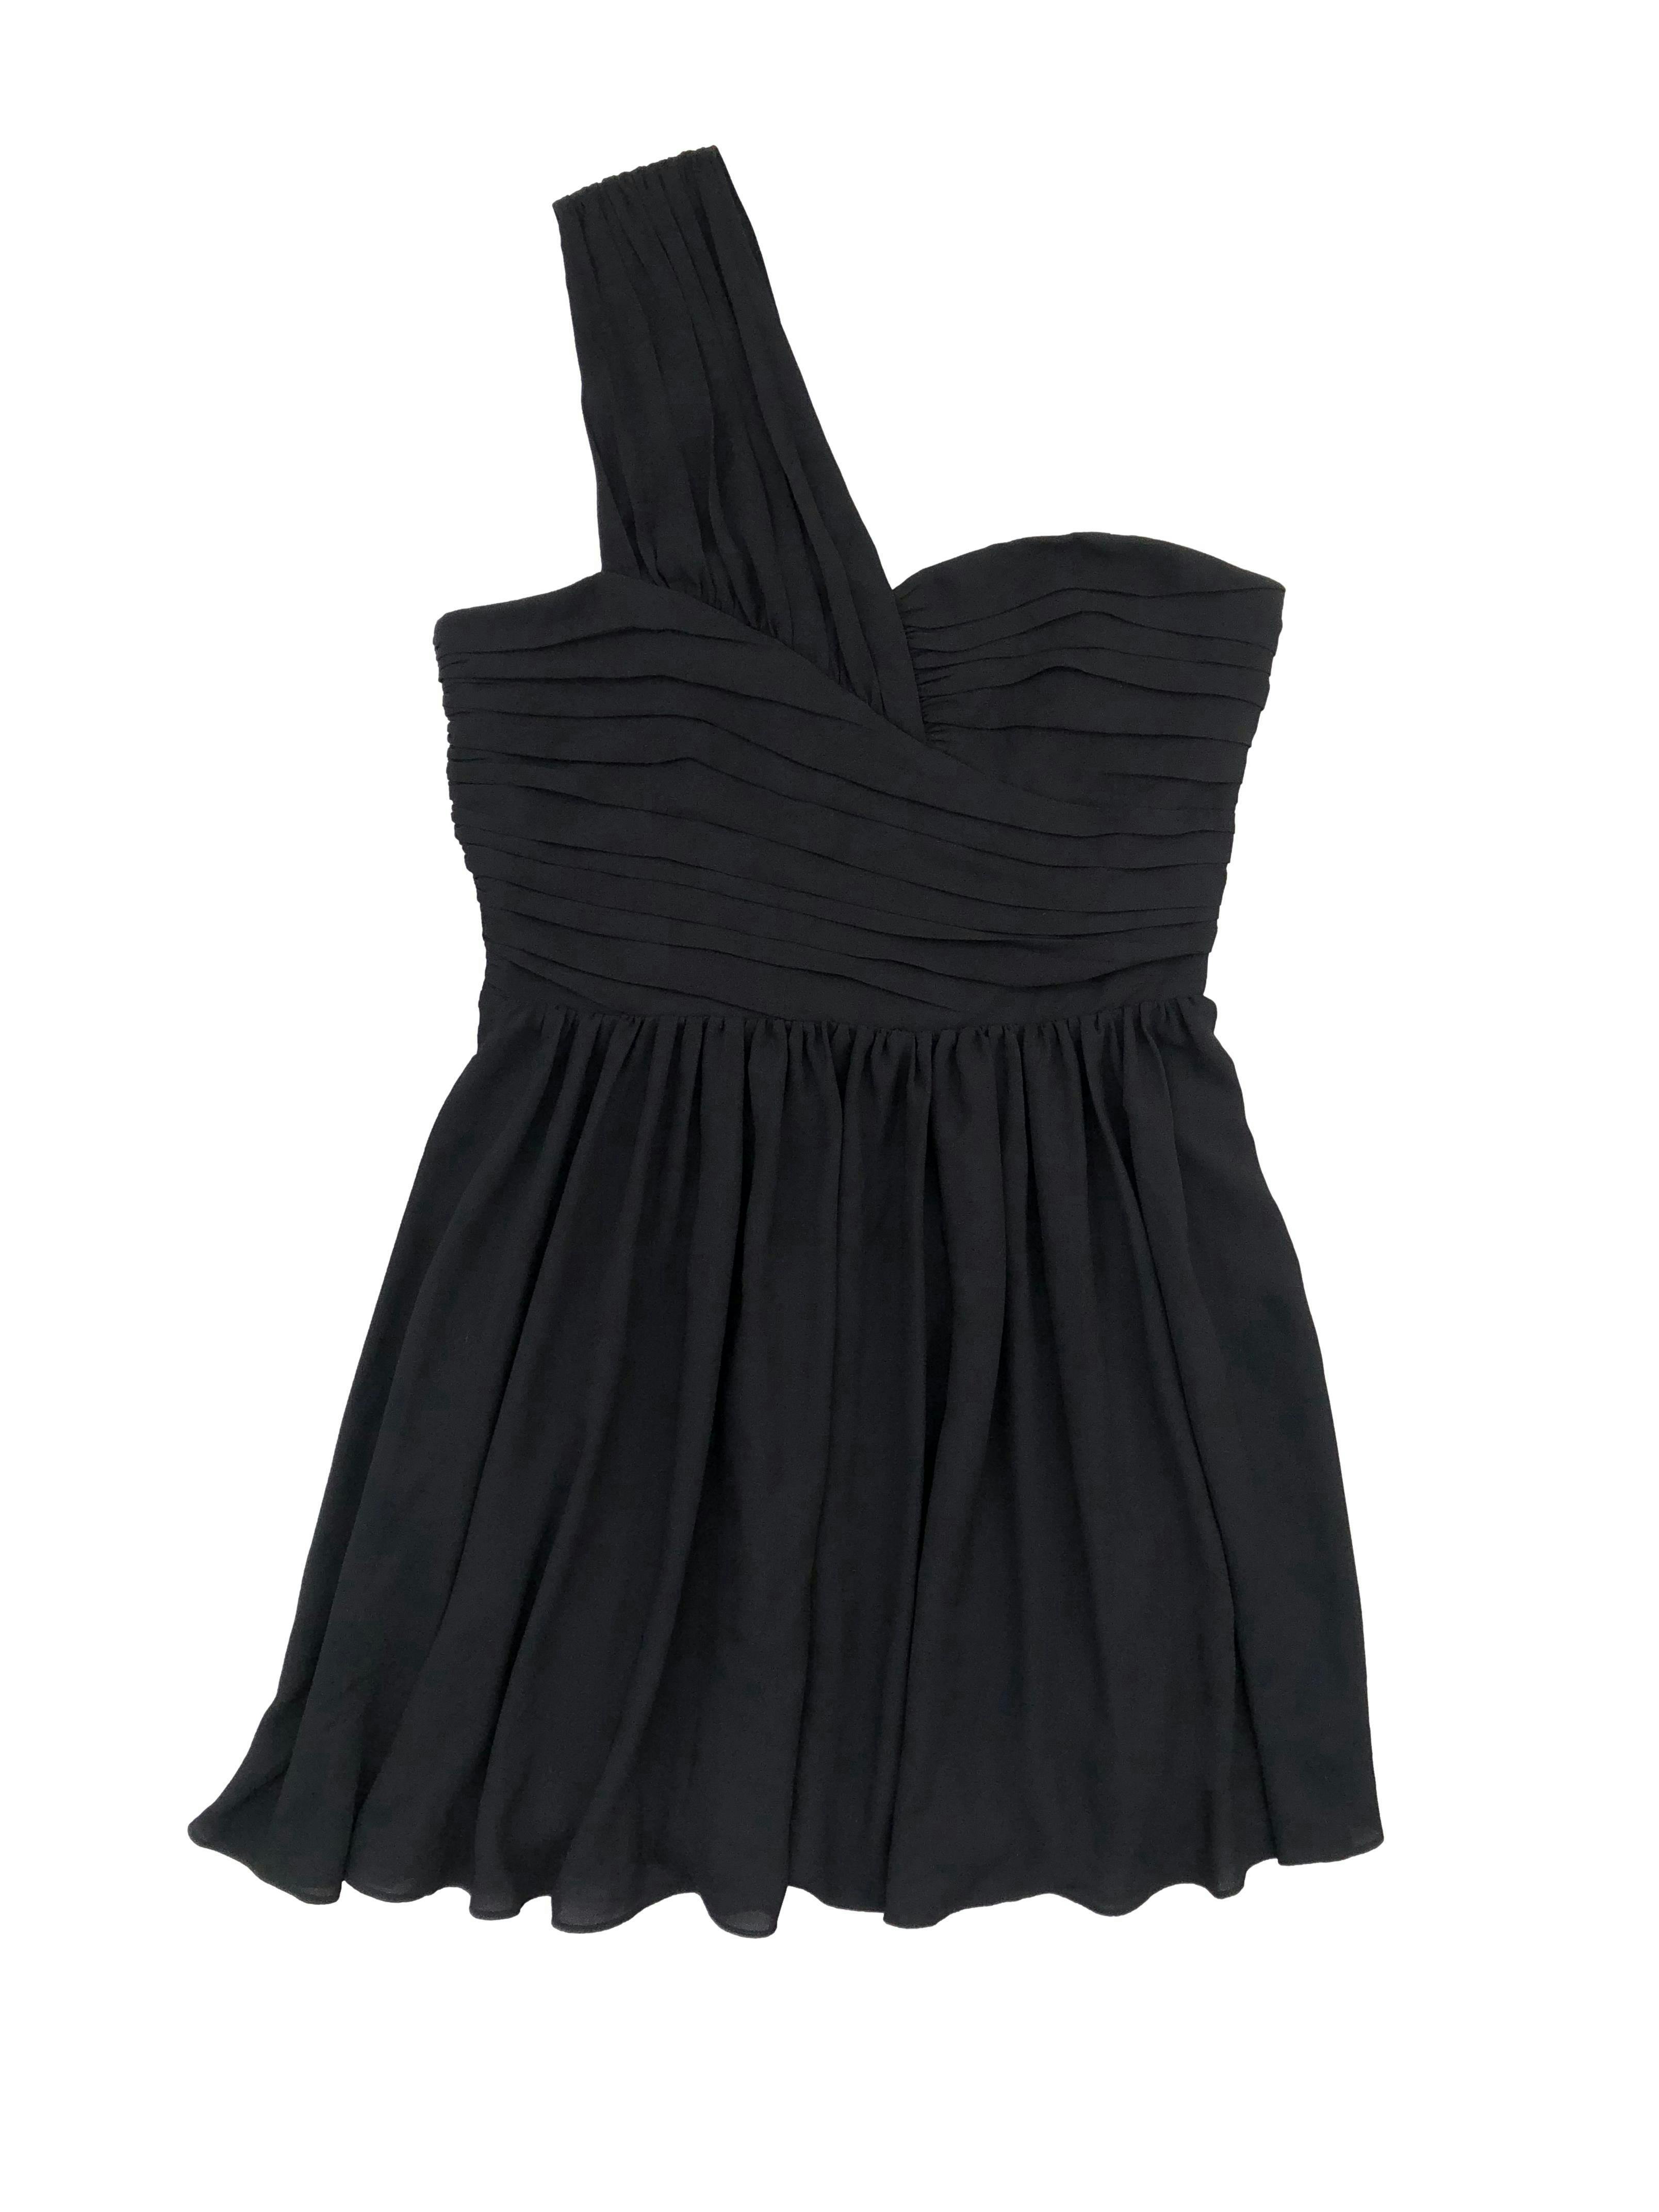 Vestido negro Express de gasa con forro, modelo de un hombro con tableros, corte en cintura y falda plisada, cierre invisible lateral. Busto 90cm, Largo 92cm.